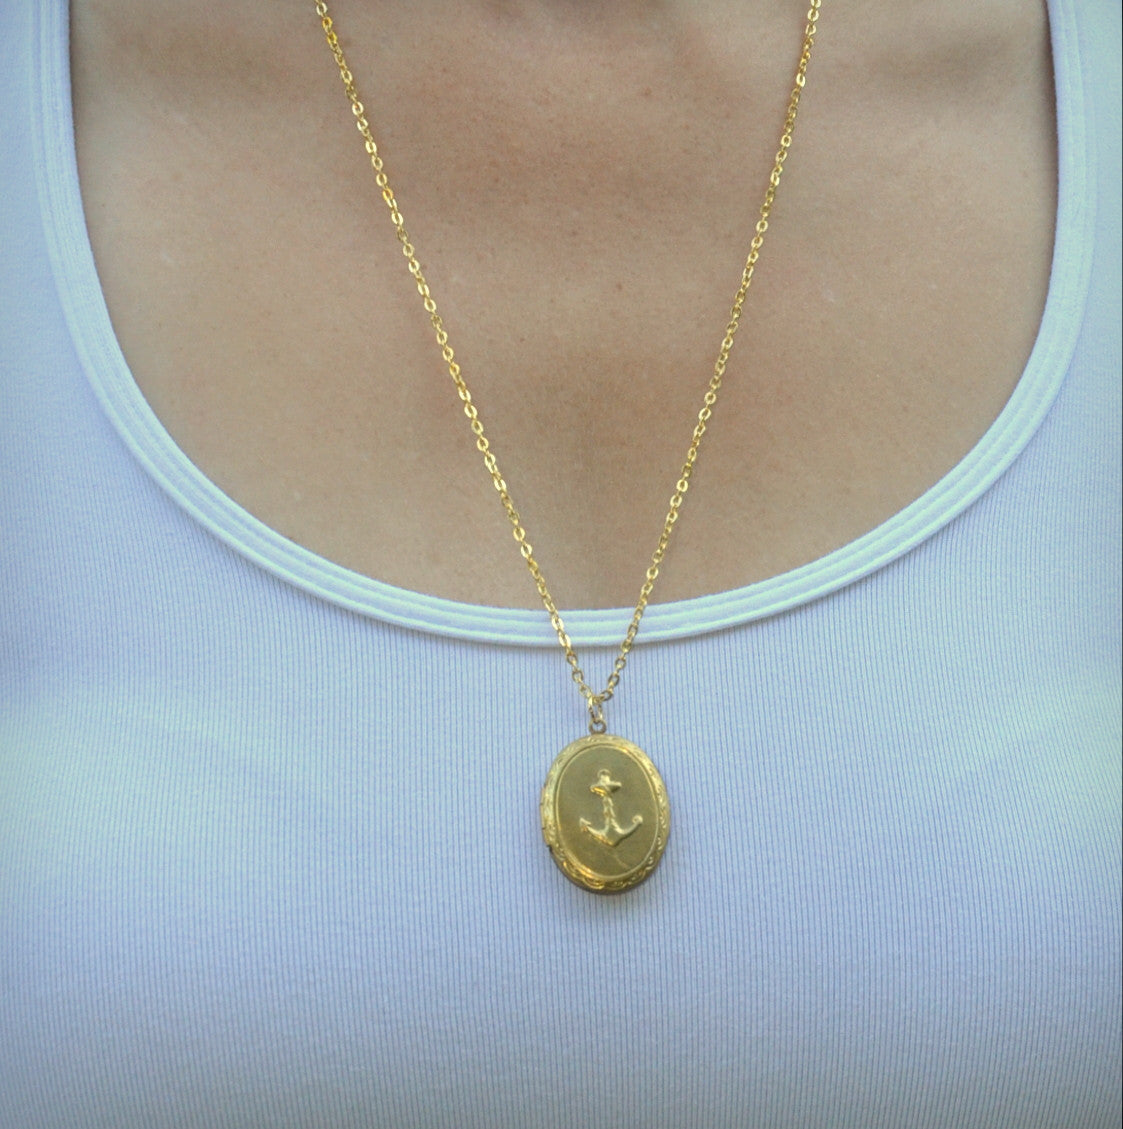 Anchor Locket Necklace - Gwen Delicious Jewelry Designs